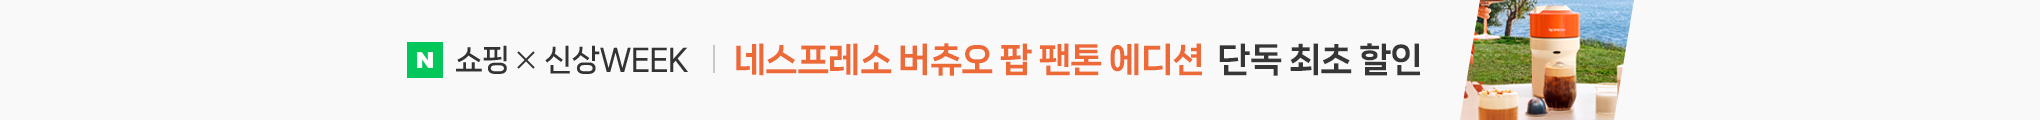 5월 13일부터 19일까지 네스프레소 신상위크 버츄오 팝 팬톤 에디션 단독 최초 할인